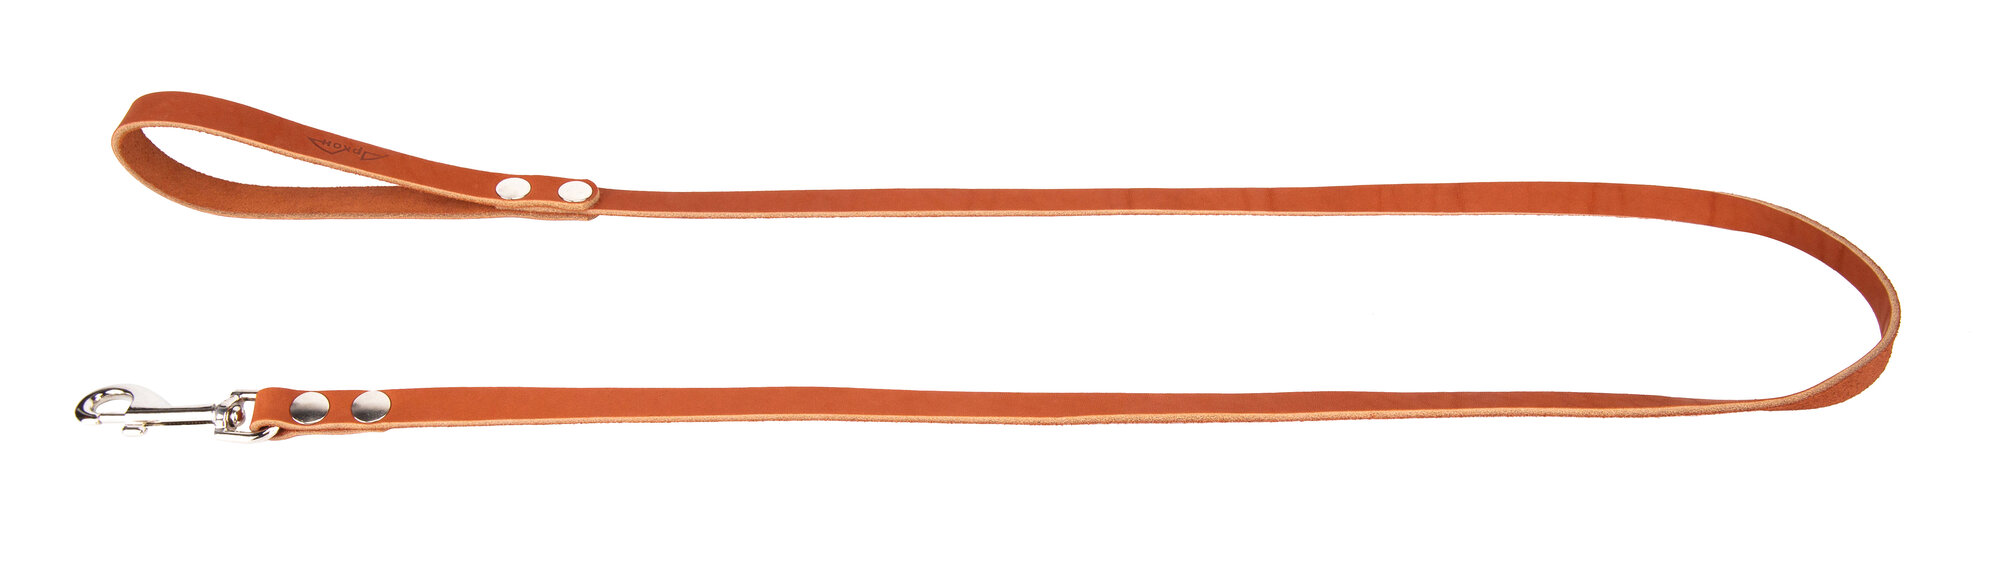 Поводок аркон кожаный 1.4м х 14мм однослойный, цвет Коньячный